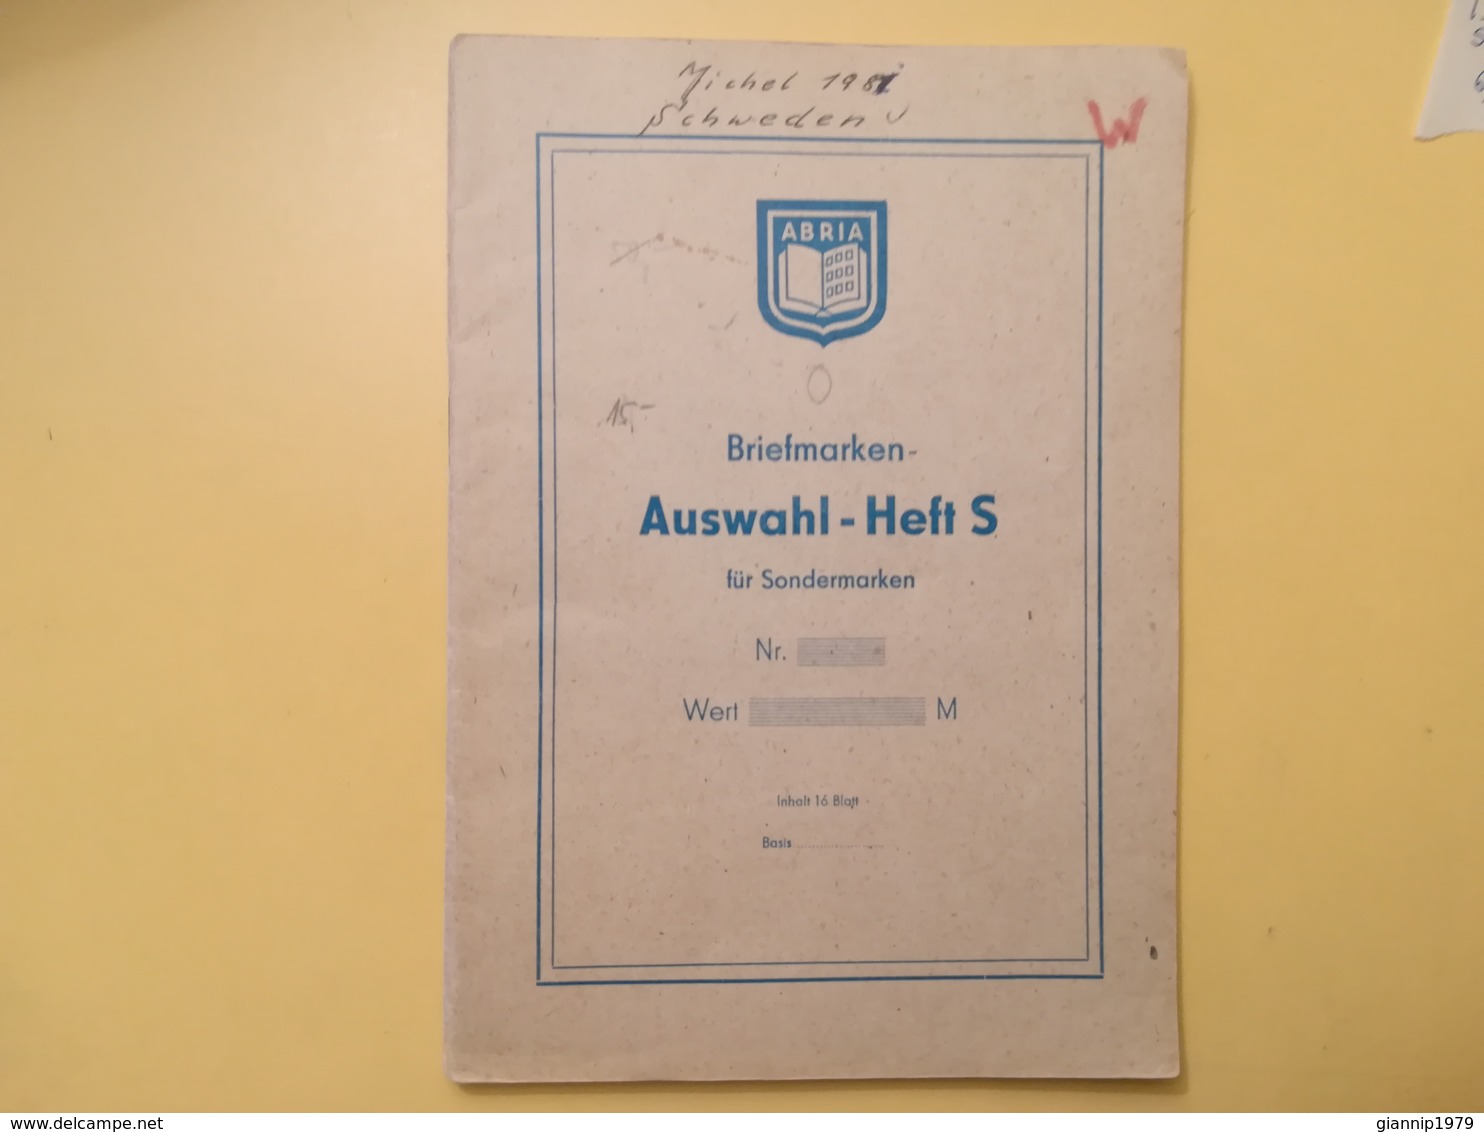 LIBRETTO FRANCOBOLLI STAMPS AUSWAHLHEFT OPUSCOLO BOOK LOTTO COLLEZIONI SVEZIA SVERIGE DAL 1964 OLTRE 120 PEZZI - Collections